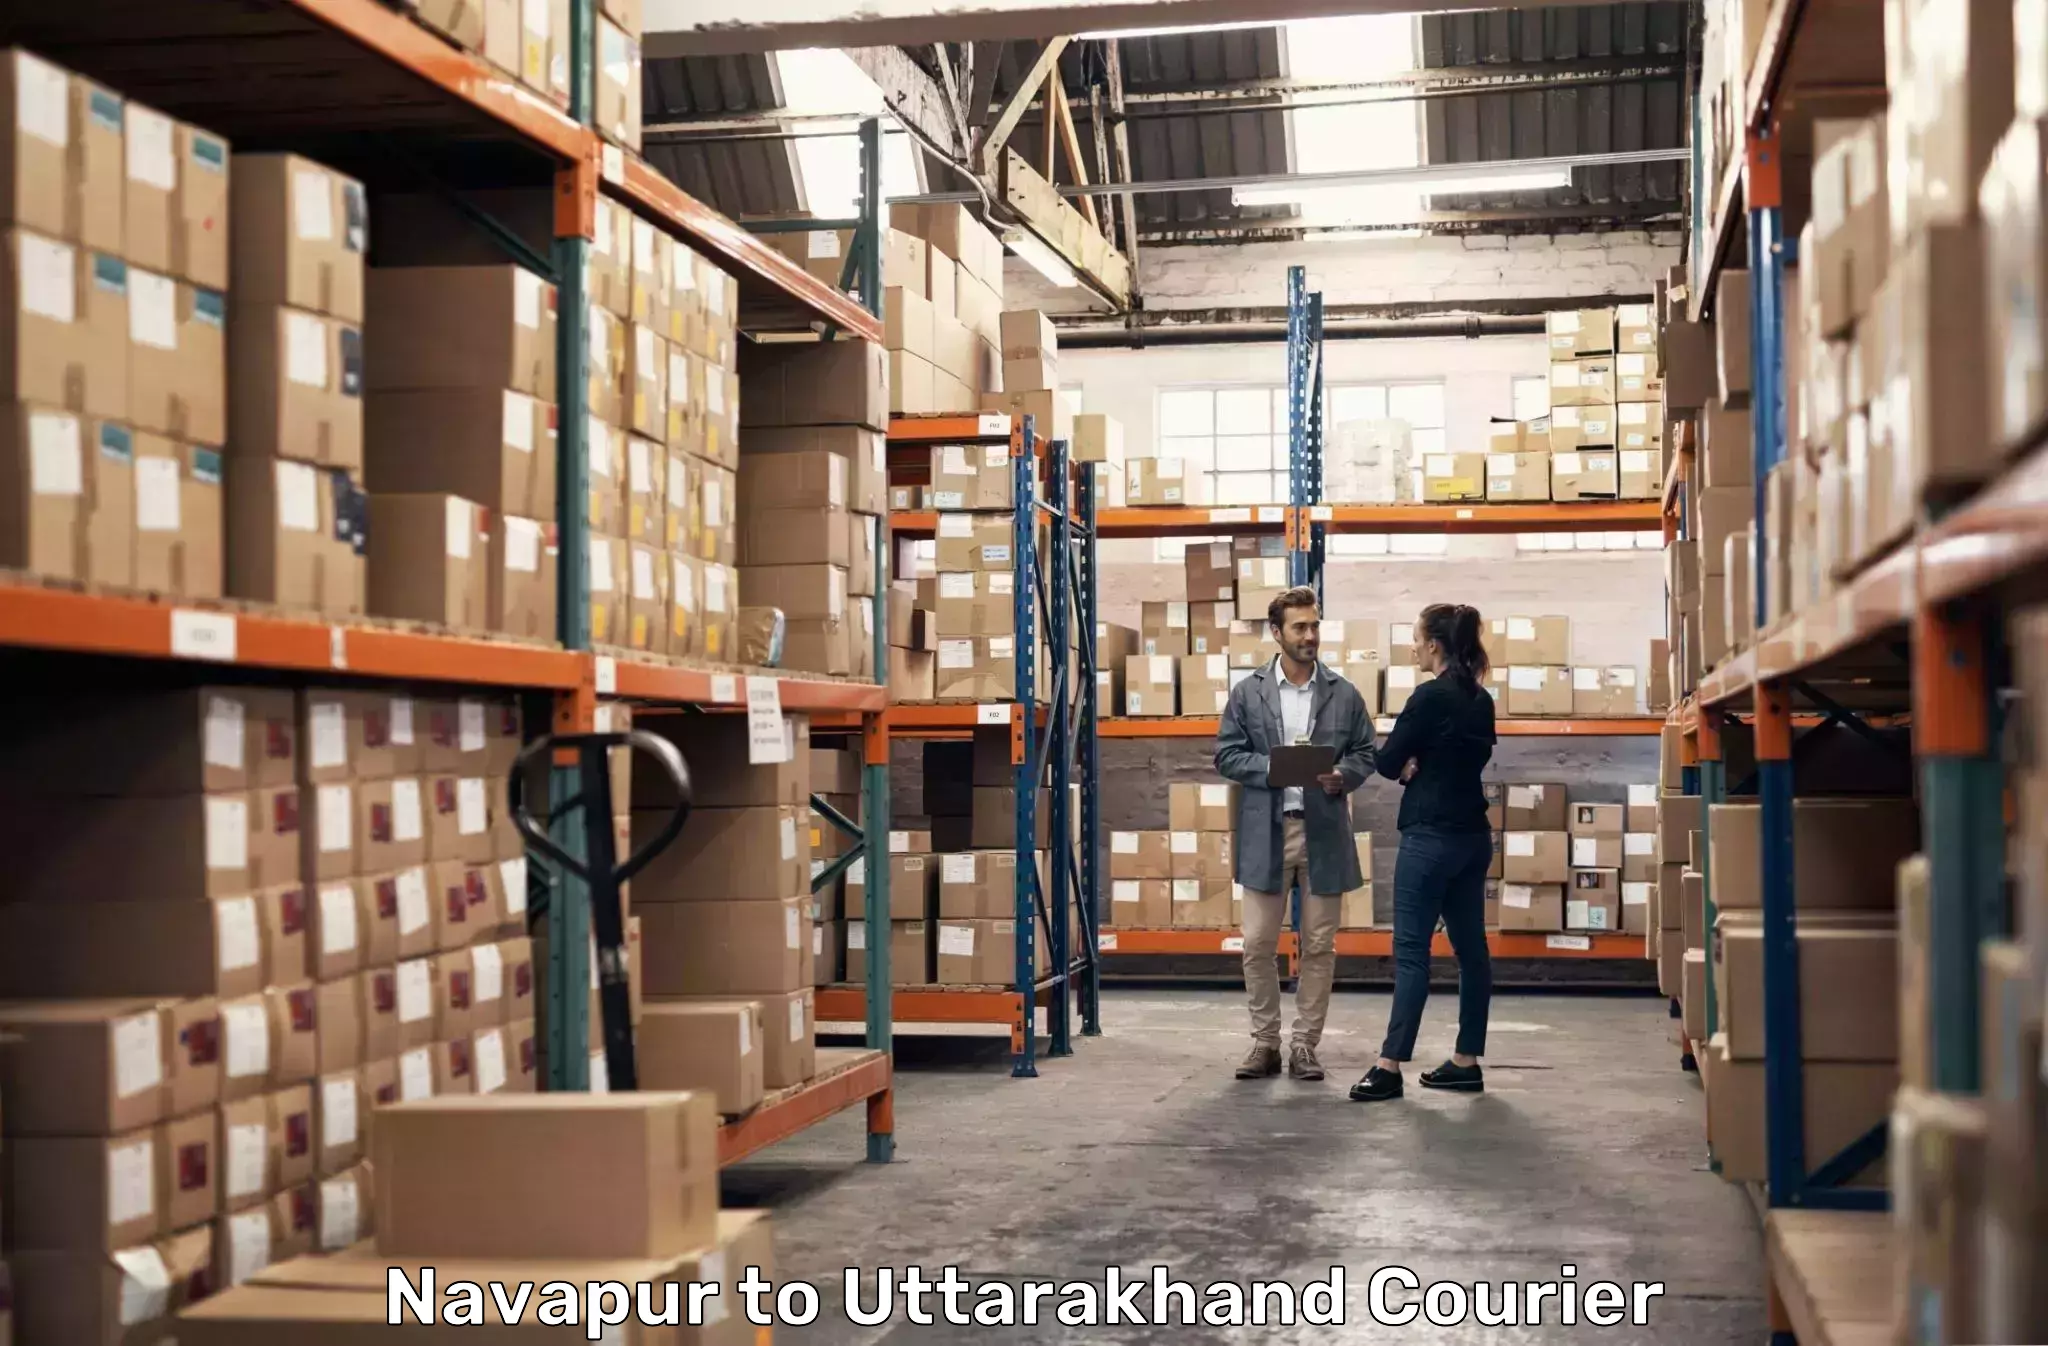 Premium courier services Navapur to Uttarakhand